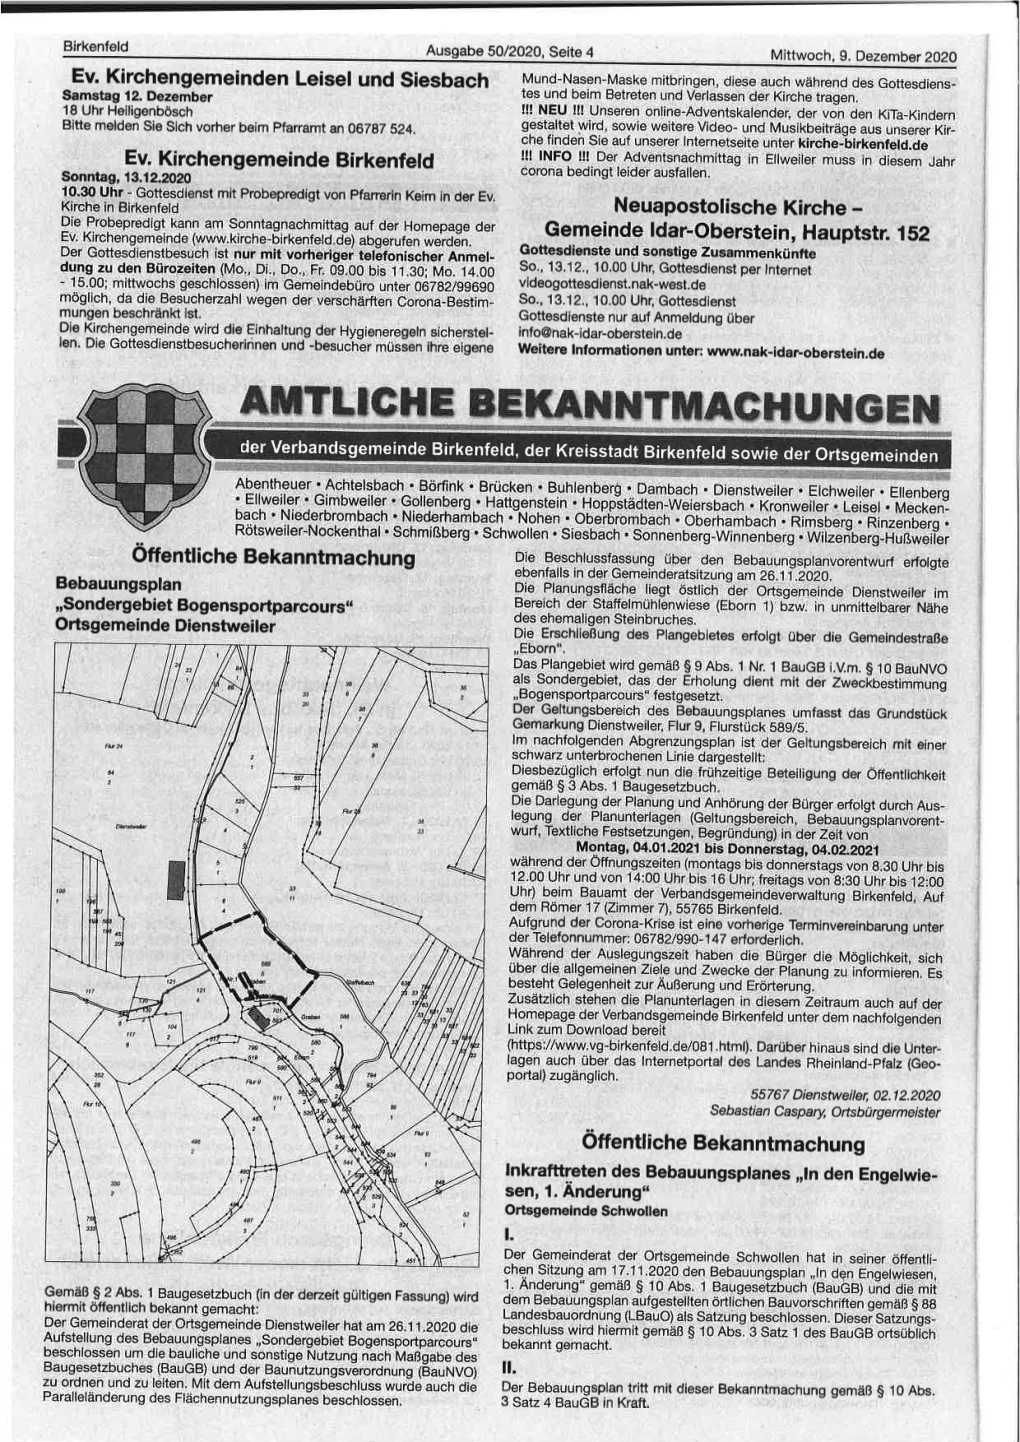 AHTTTCHE Eekahxtmacltuneen Der Verbandsgemeinde Birkenfeld, Der Kreisstadt Birkenfel D Sowie Der Ortsgemeinden